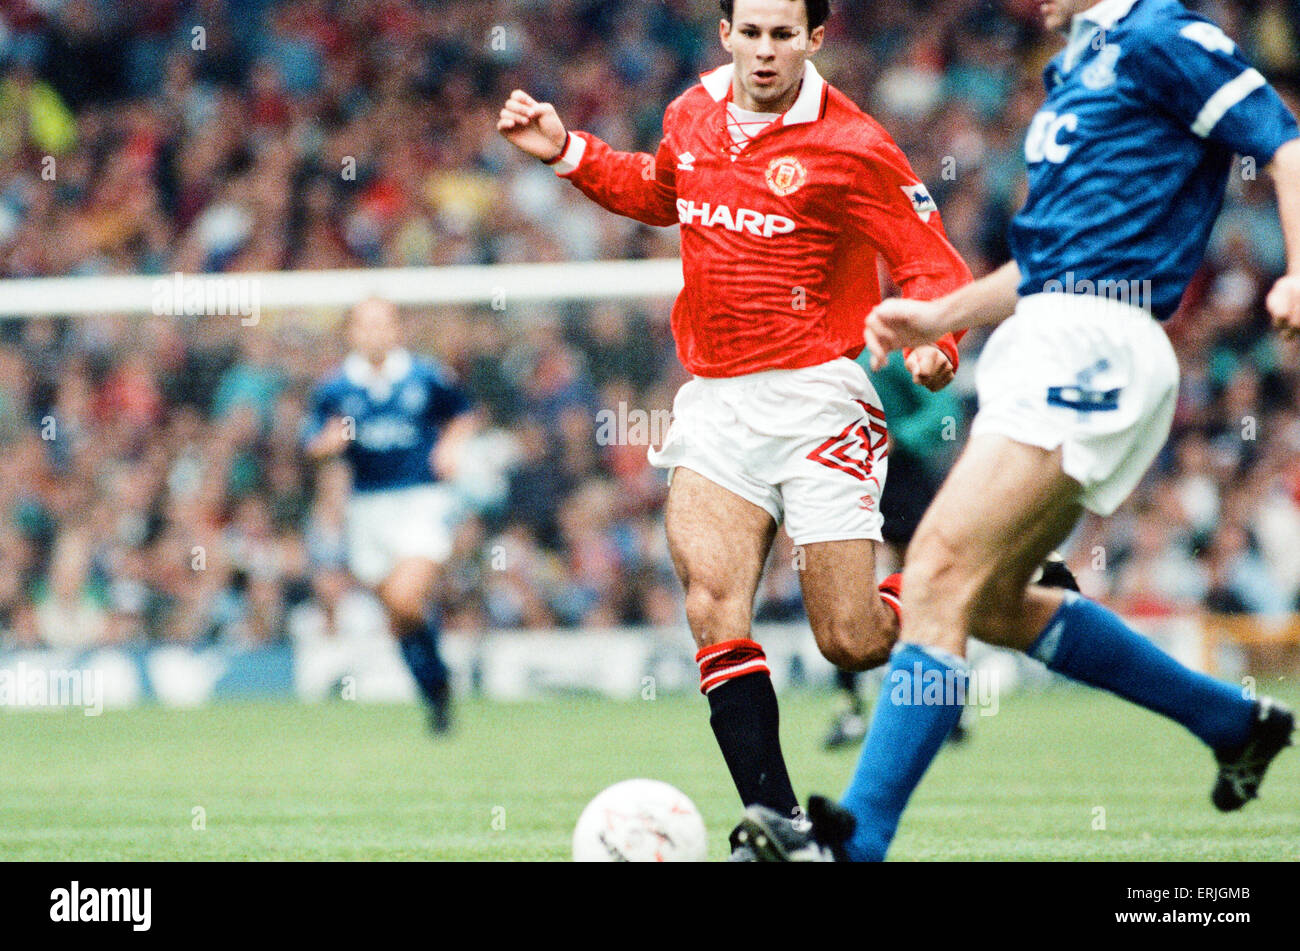 Everton 0-2 Manchester United, league a Goodison Park, sabato 12 settembre 1992. Ryan vedi figg. ***. Foto Stock